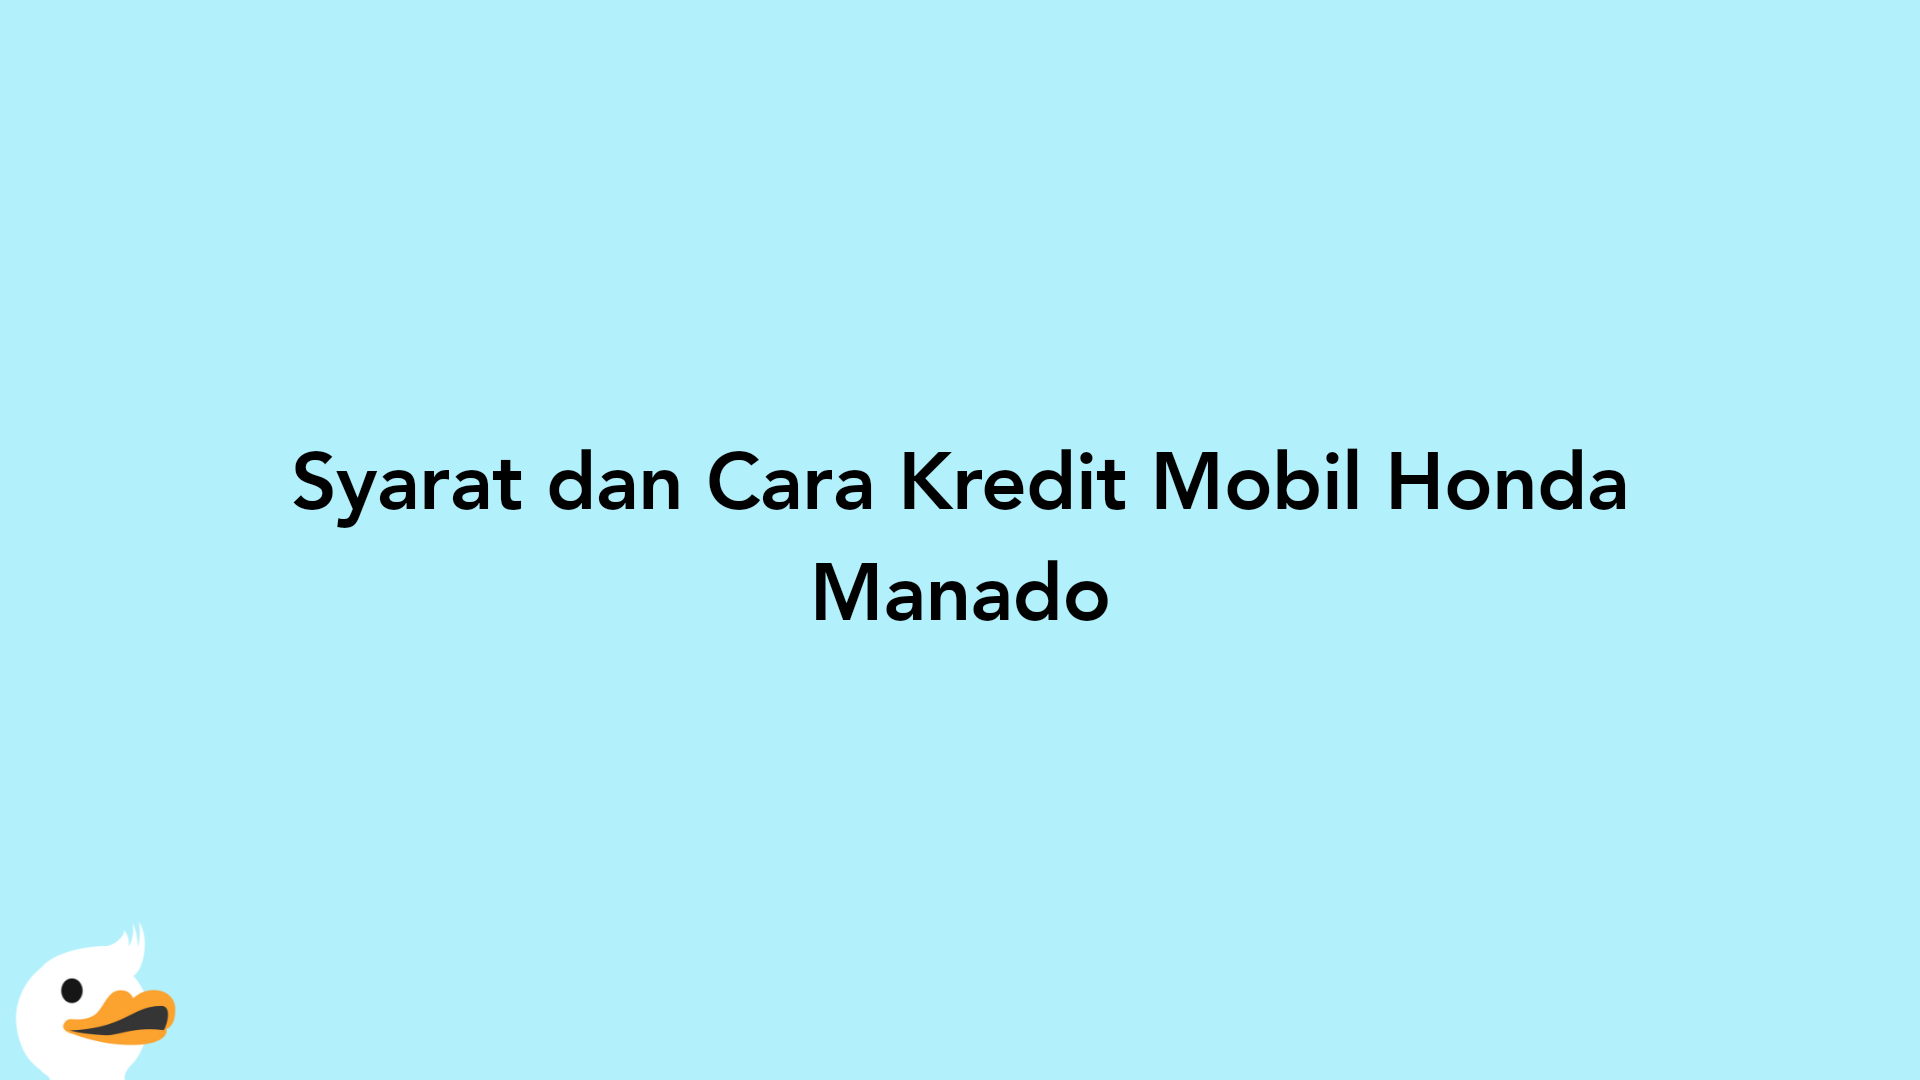 Syarat dan Cara Kredit Mobil Honda Manado